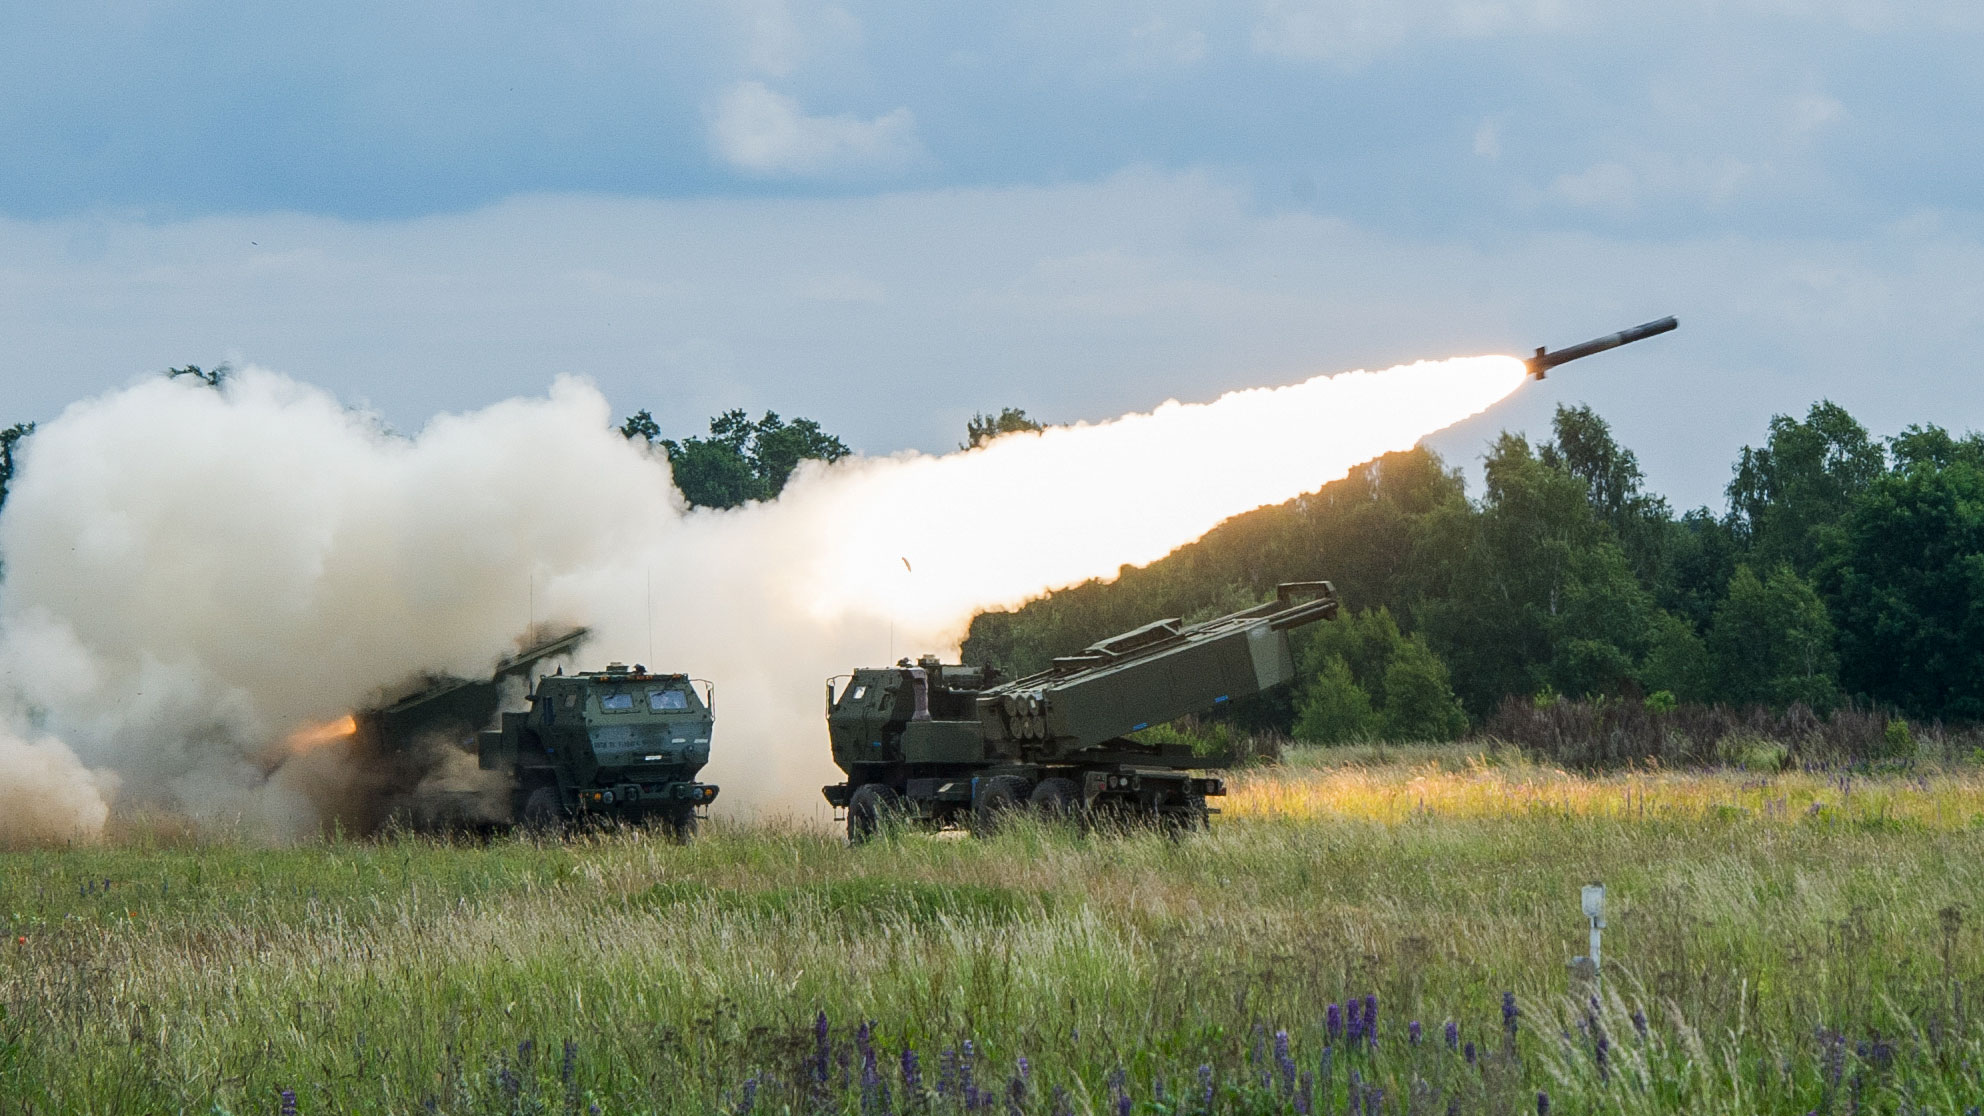 Le forze armate dell'Ucraina hanno distrutto la base militare russa sul territorio dell'Ucraina con l'aiuto dell'M142 HIMARS